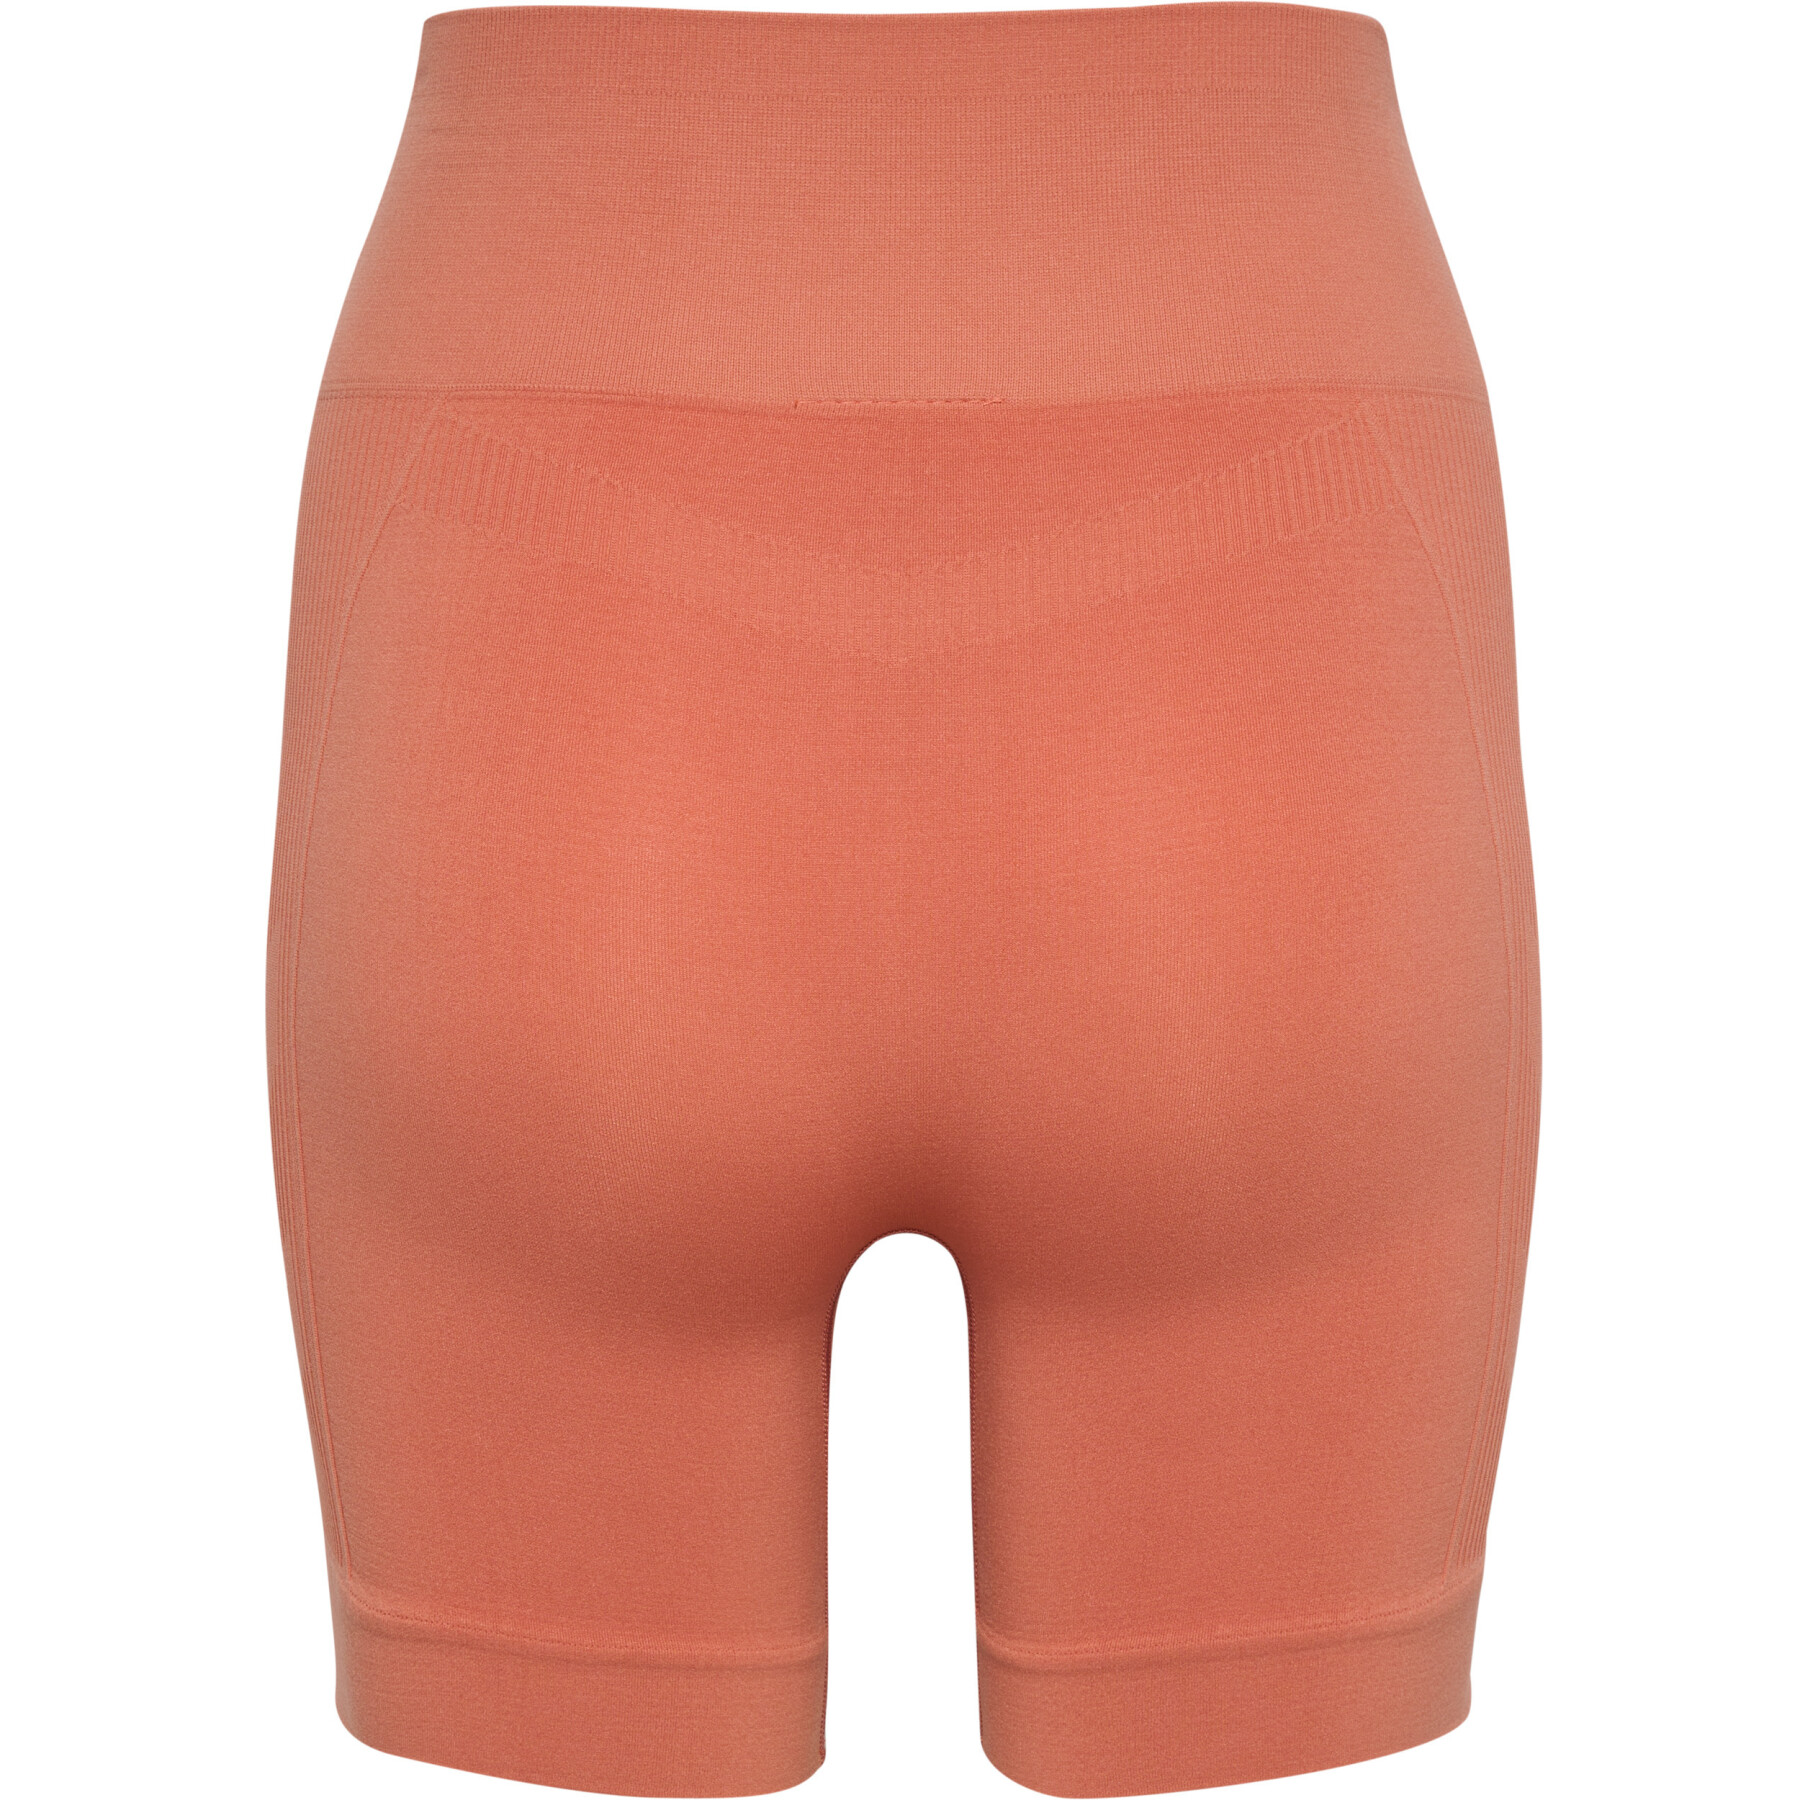 Naadloze shorts voor dames Hummel Tif